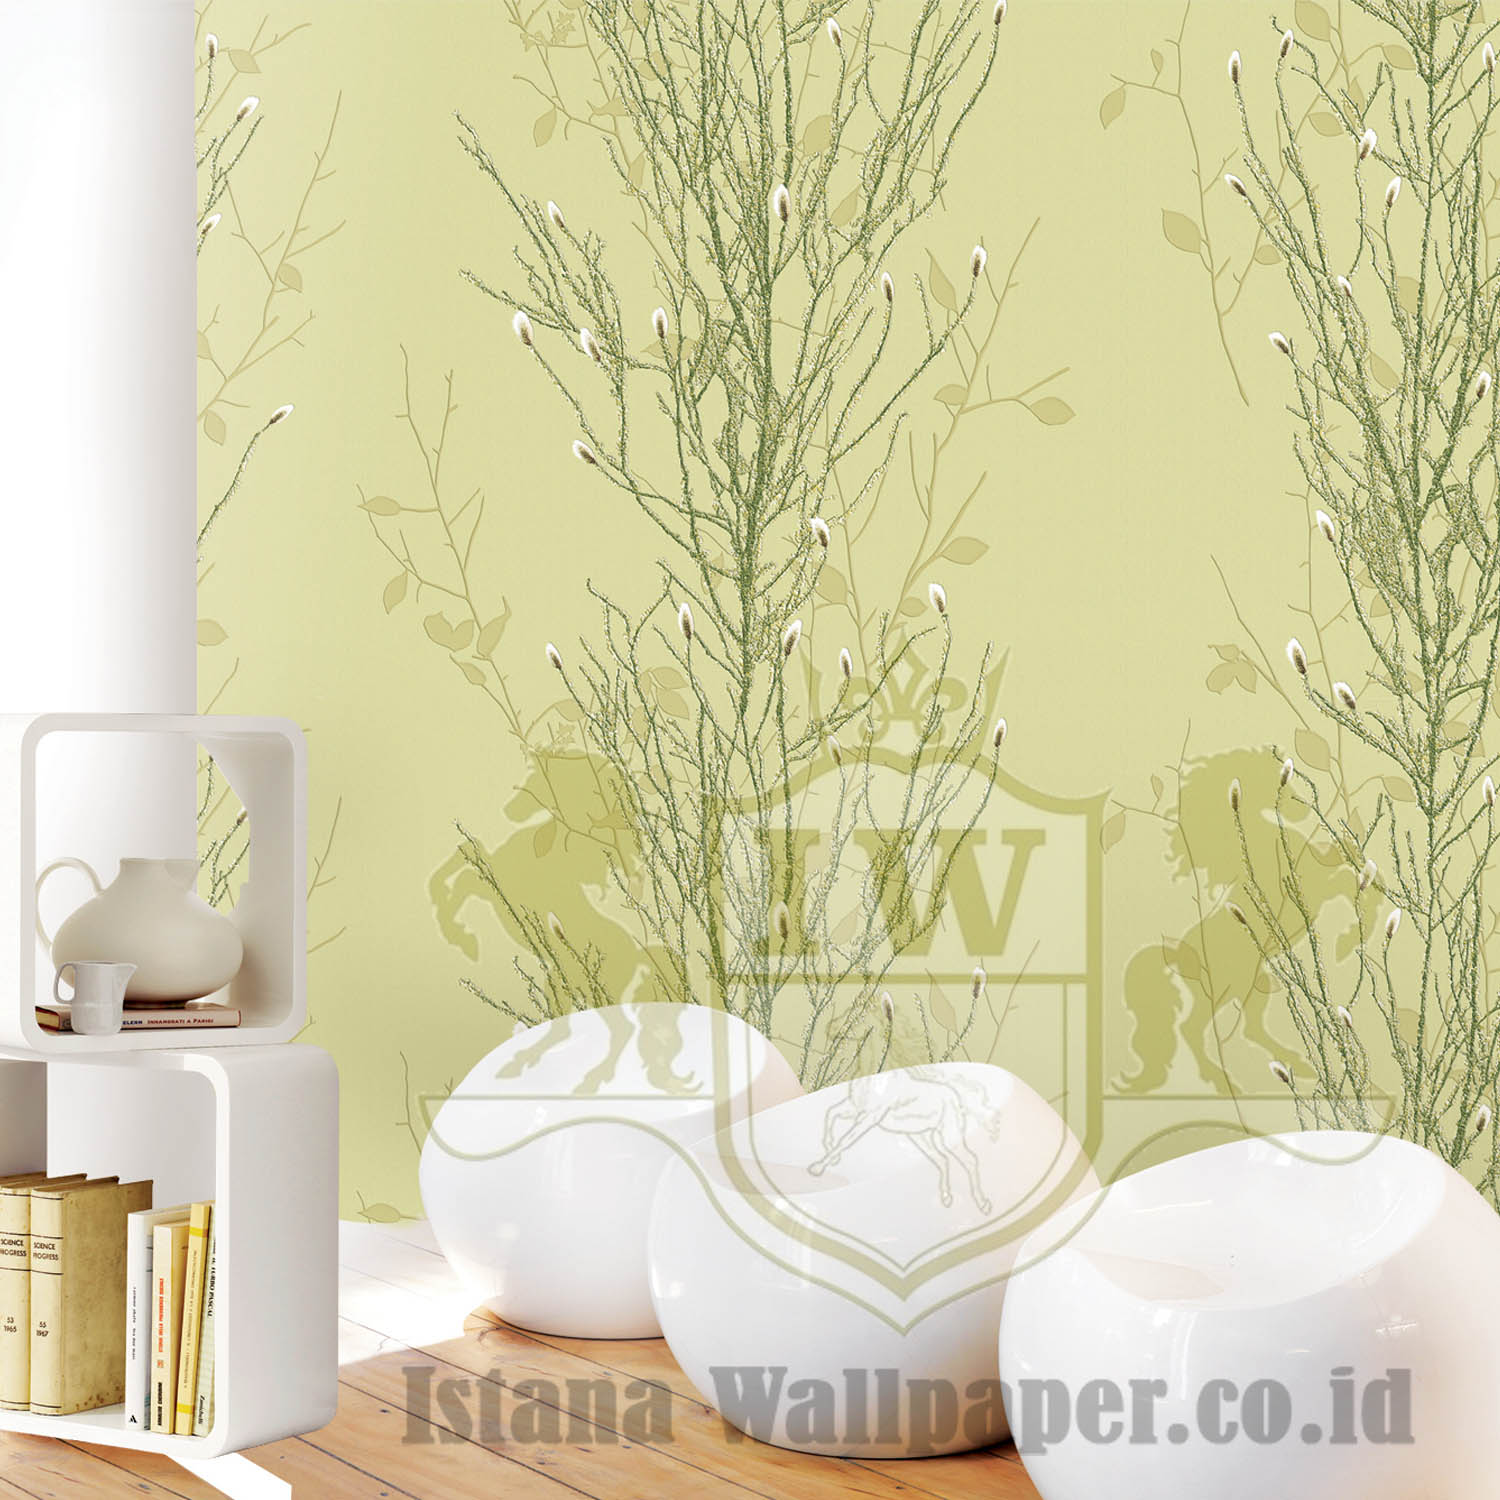 22000 2 Istana Wallpaper - Harga Wallpaper Dinding Di Medan - HD Wallpaper 